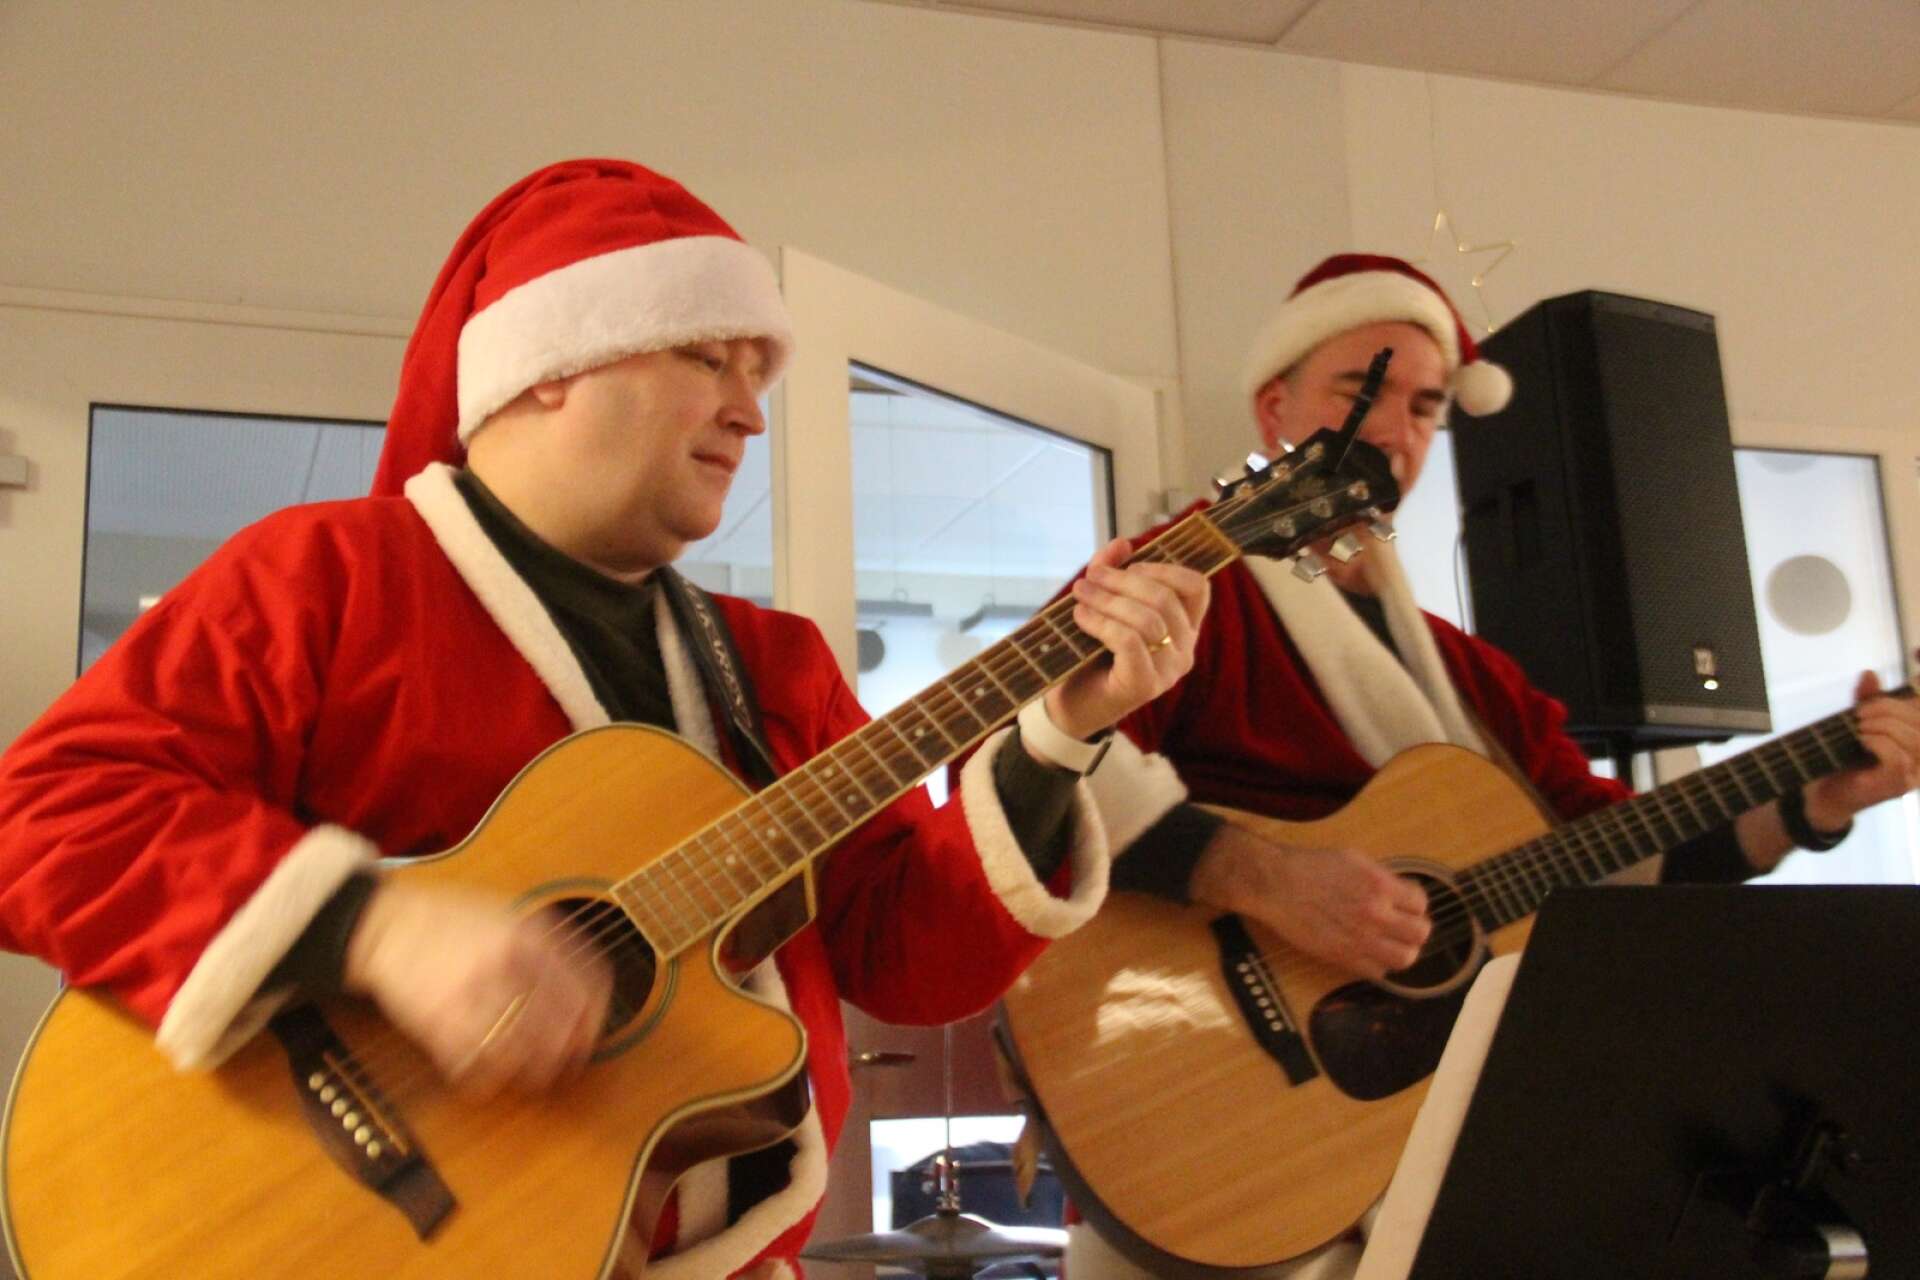 Piff och Puff är också ett radarpar på jul, men åtminstone vad allmänheten känner till spelar de inte lika bra gitarr som Jimmy Grimberg och Niklas Lychou.